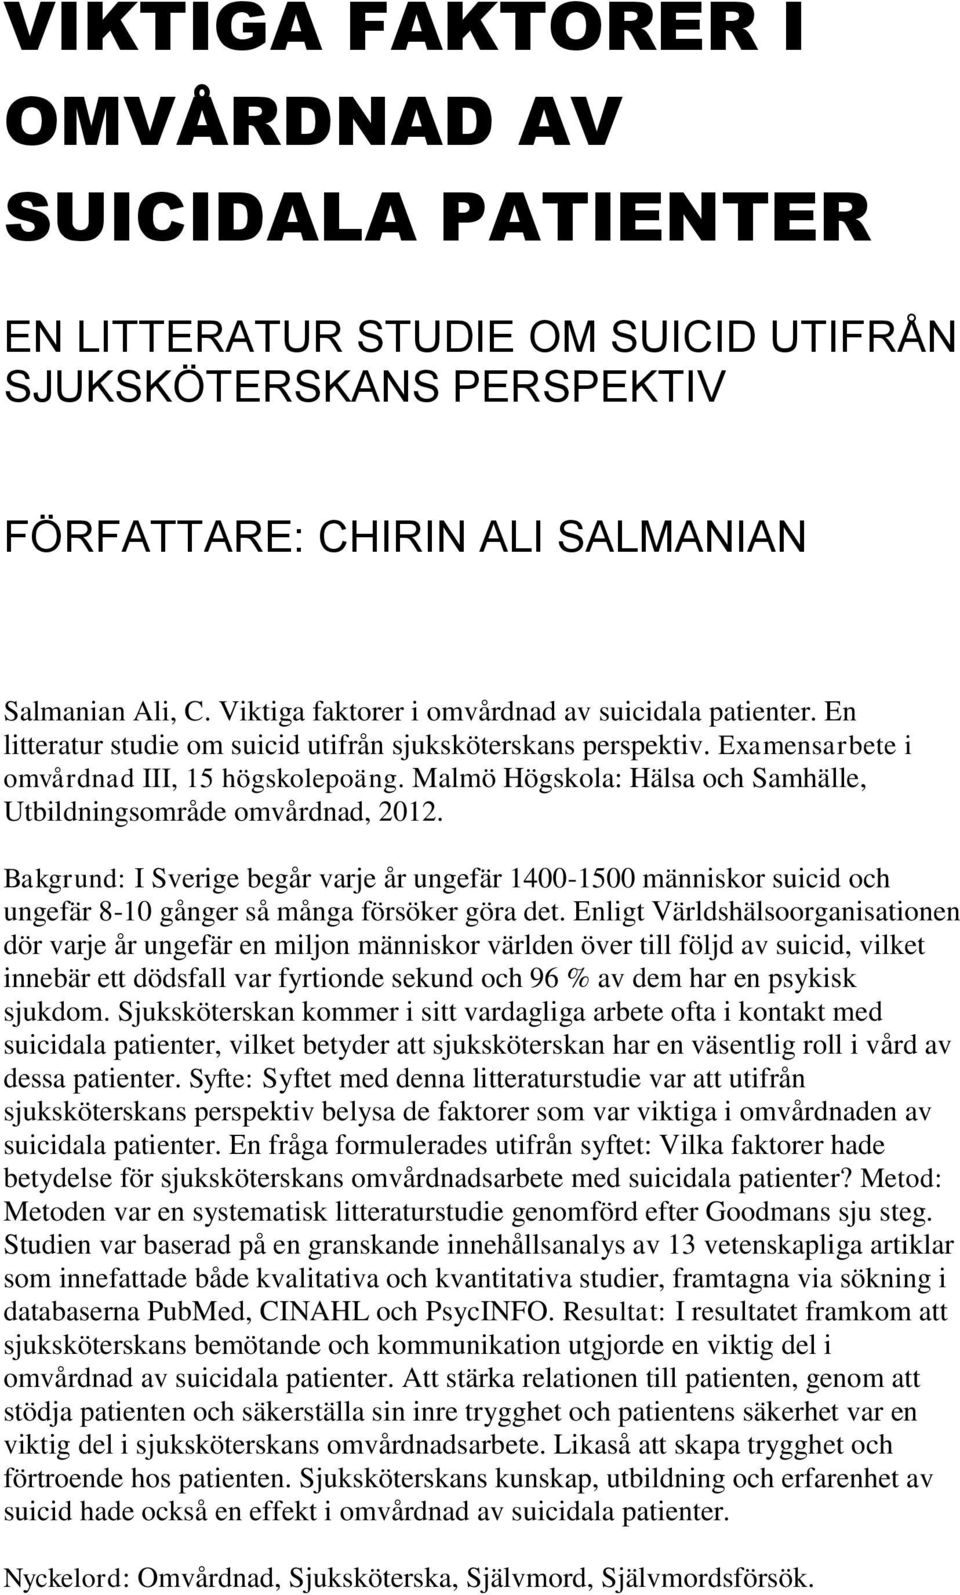 Malmö Högskola: Hälsa och Samhälle, Utbildningsområde omvårdnad, 2012. Bakgrund: I Sverige begår varje år ungefär 1400-1500 människor suicid och ungefär 8-10 gånger så många försöker göra det.